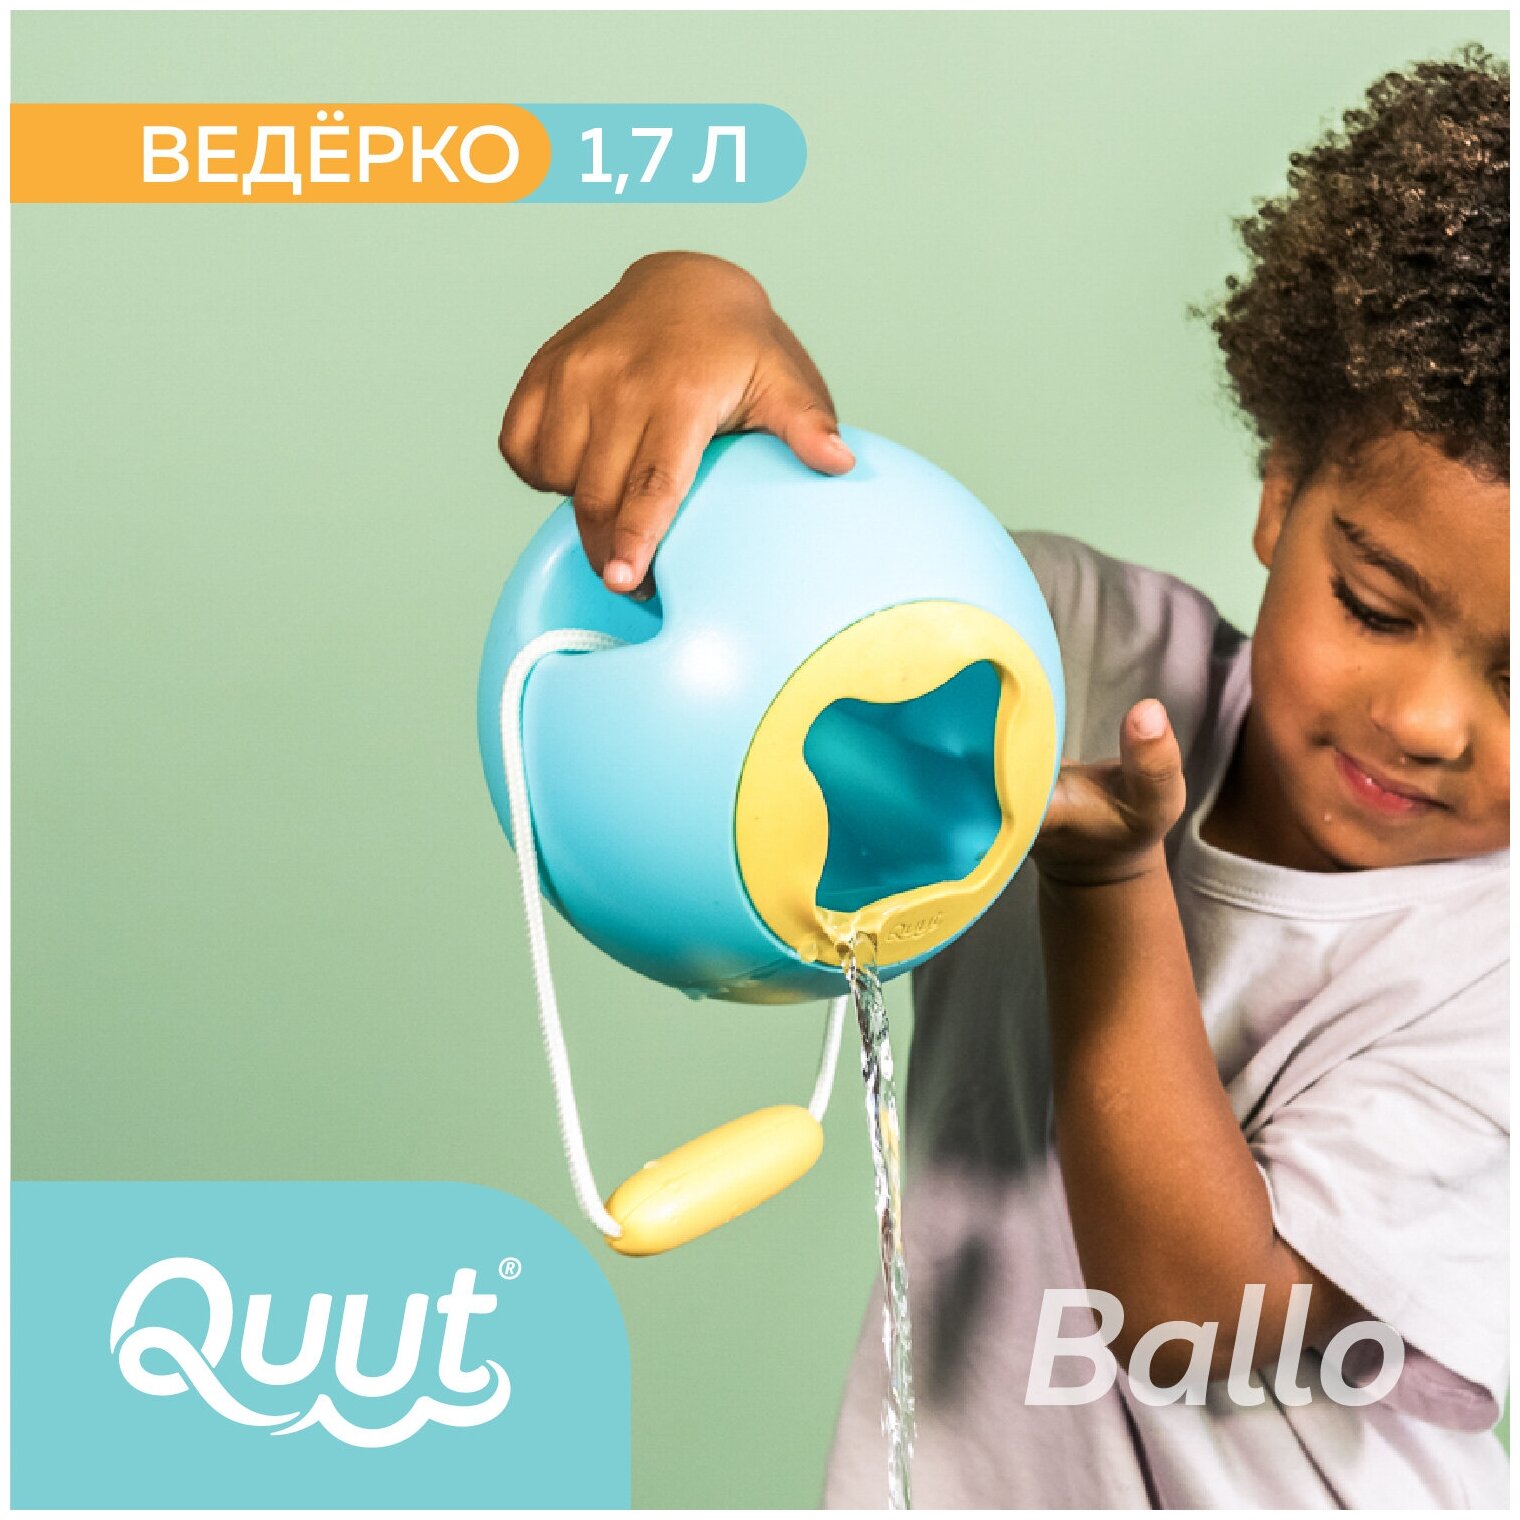 Детское ведерко для воды Quut mini Ballo. Объём: 1,7 л. Цвет: винтажный синий и жёлтый камень